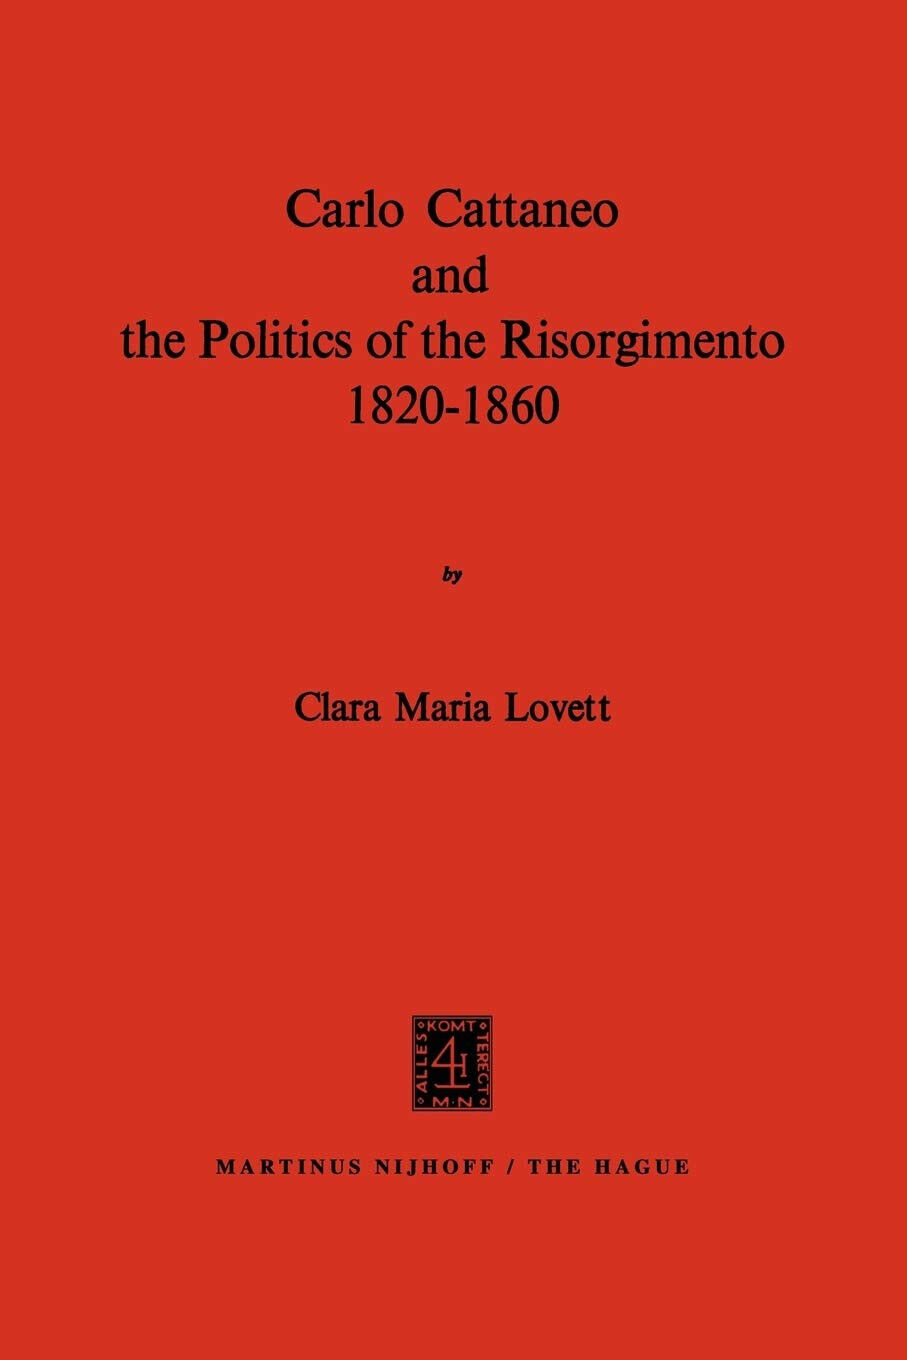 Carlo Cattaneo and the Politics of the Risorgimento, 1820-1860 - C. M. Lovett libro usato